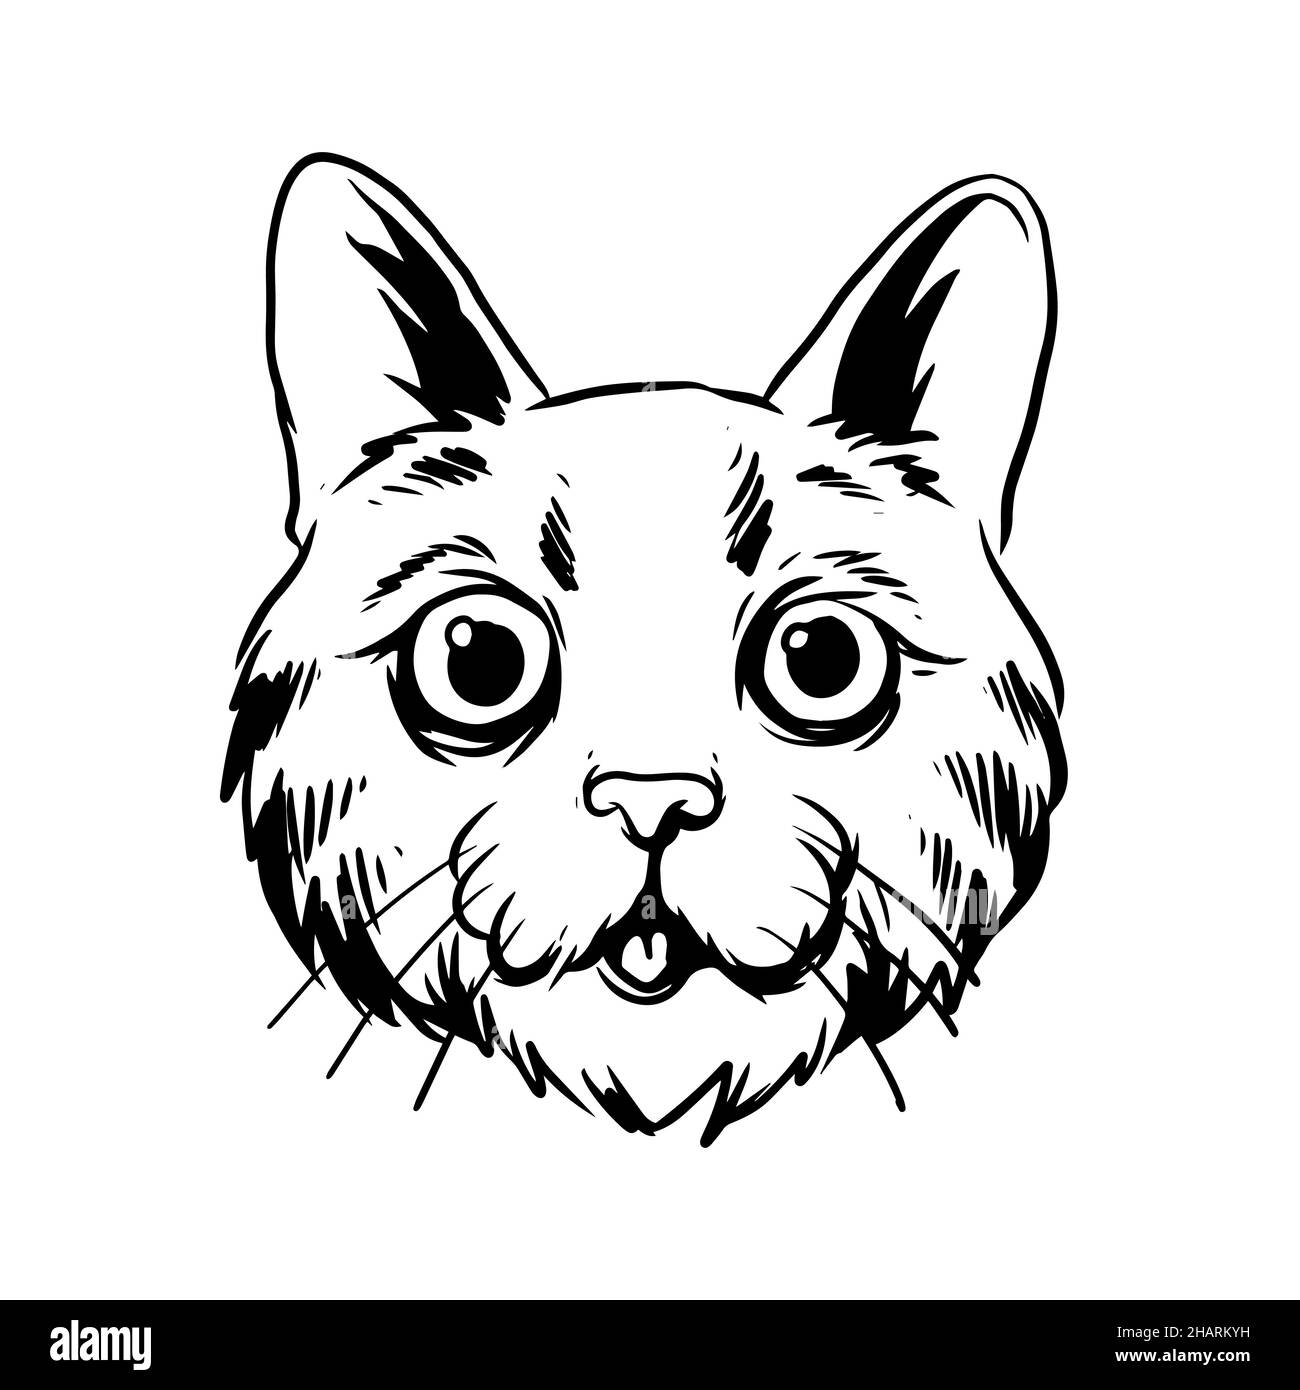 un gatto con una bella illustrazione del viso. una illustrazione disegnata a mano di una testa animale selvaggia. disegno di arte di linea per emblema, poster, adesivo, tatuaggio, ecc. Foto Stock